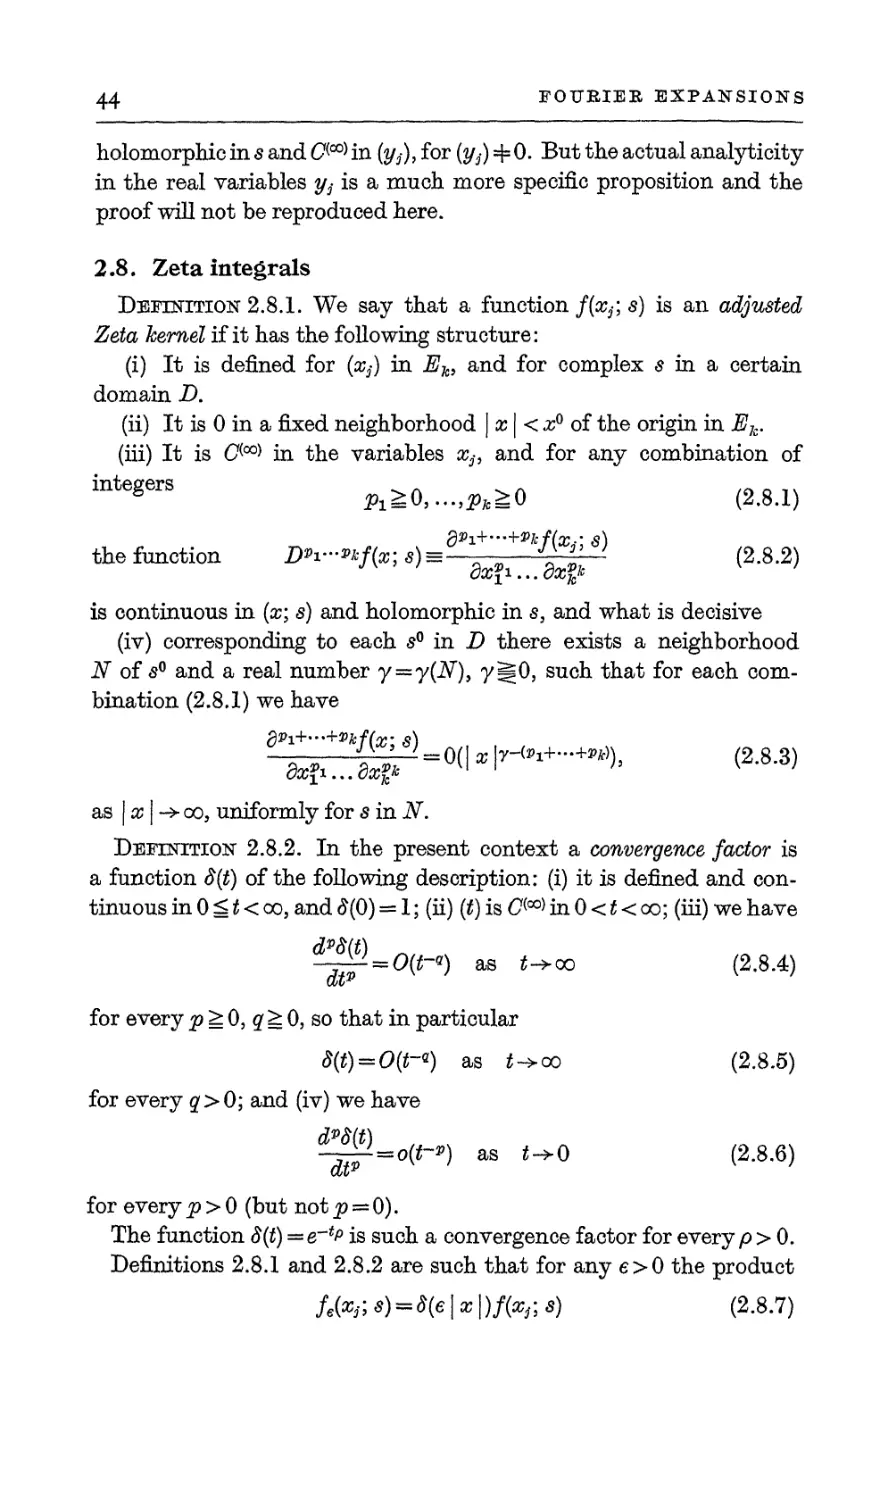 2.8. Zeta integrals